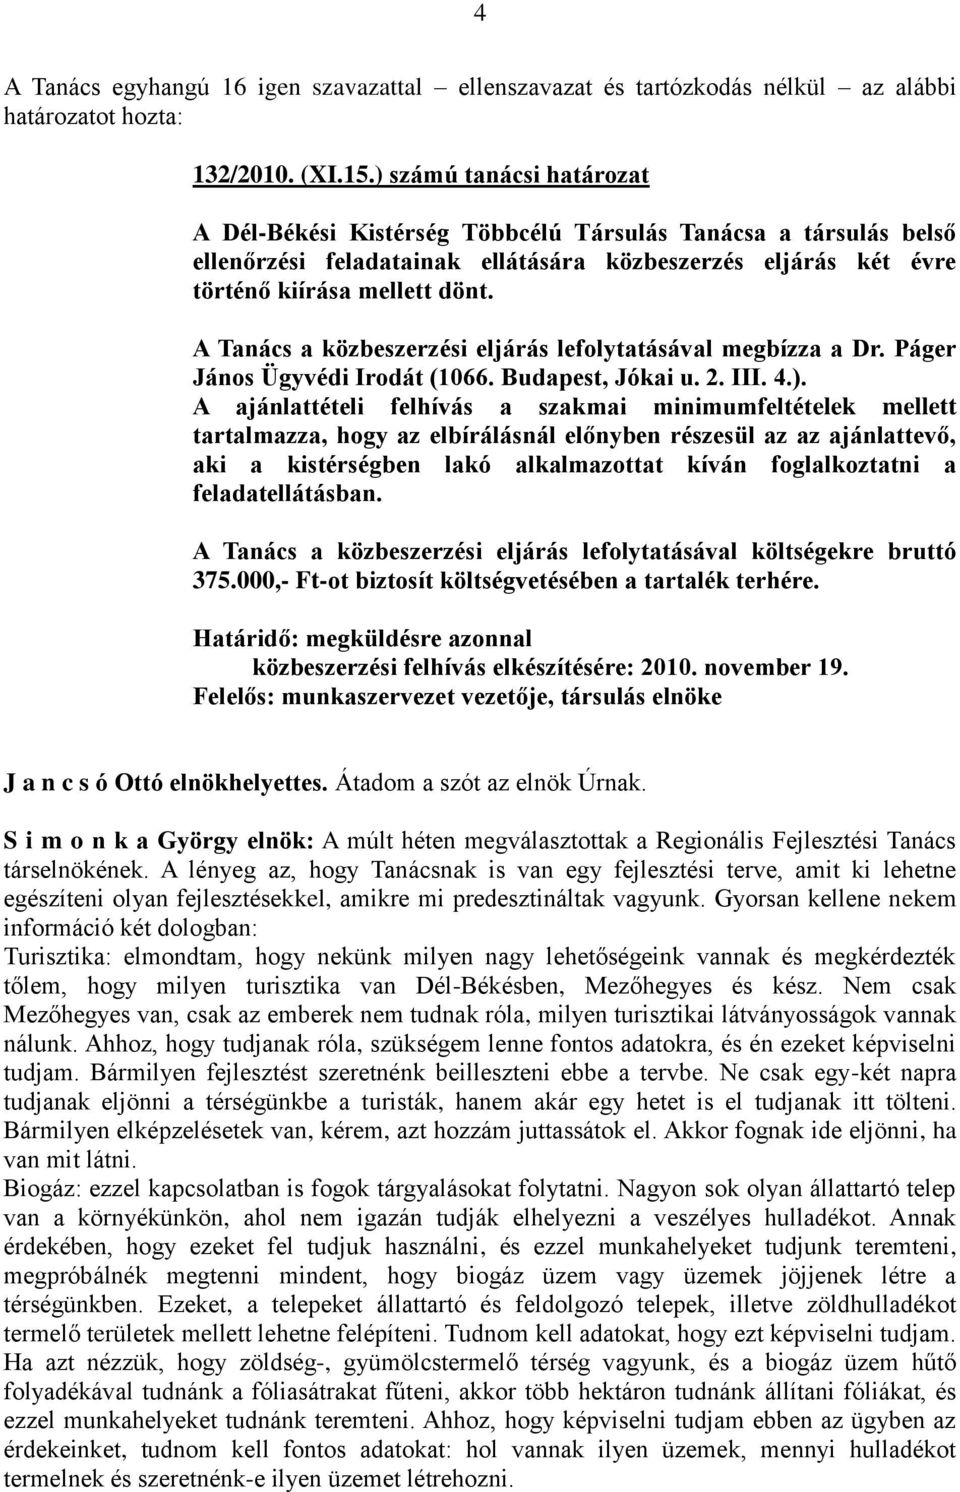 A Tanács a közbeszerzési eljárás lefolytatásával megbízza a Dr. Páger János Ügyvédi Irodát (1066. Budapest, Jókai u. 2. III. 4.).